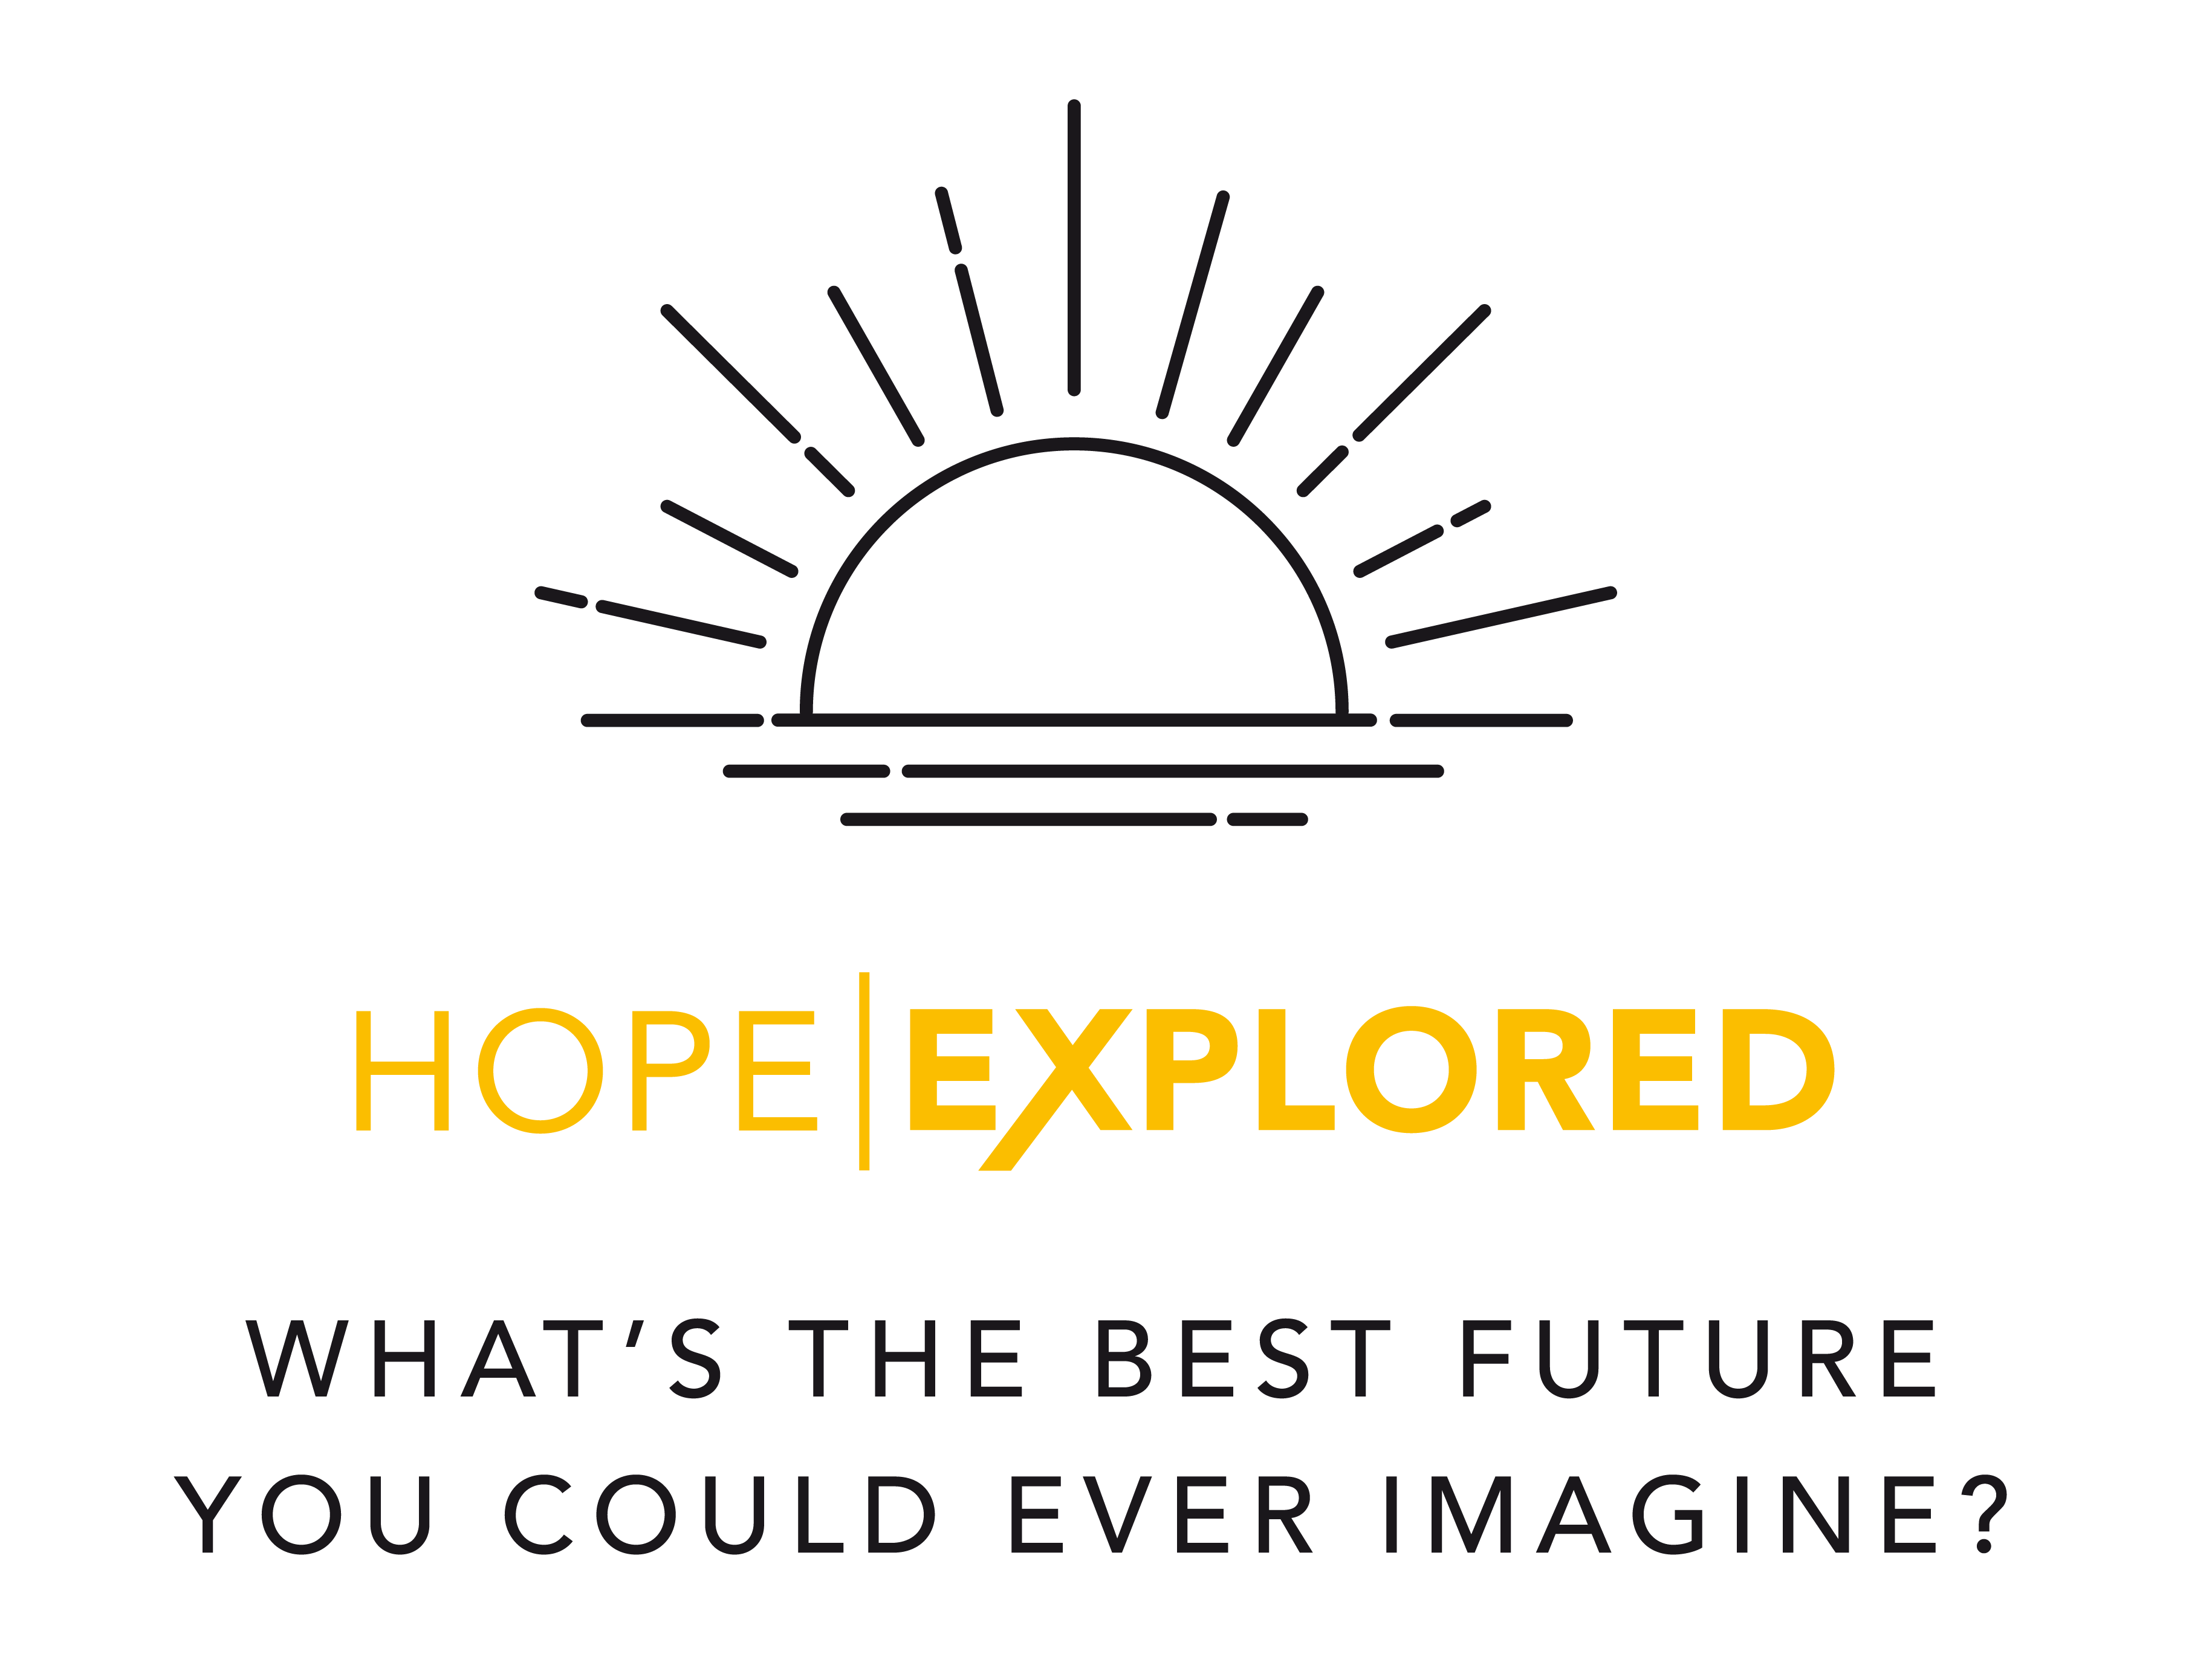 Hope explored logo cropped